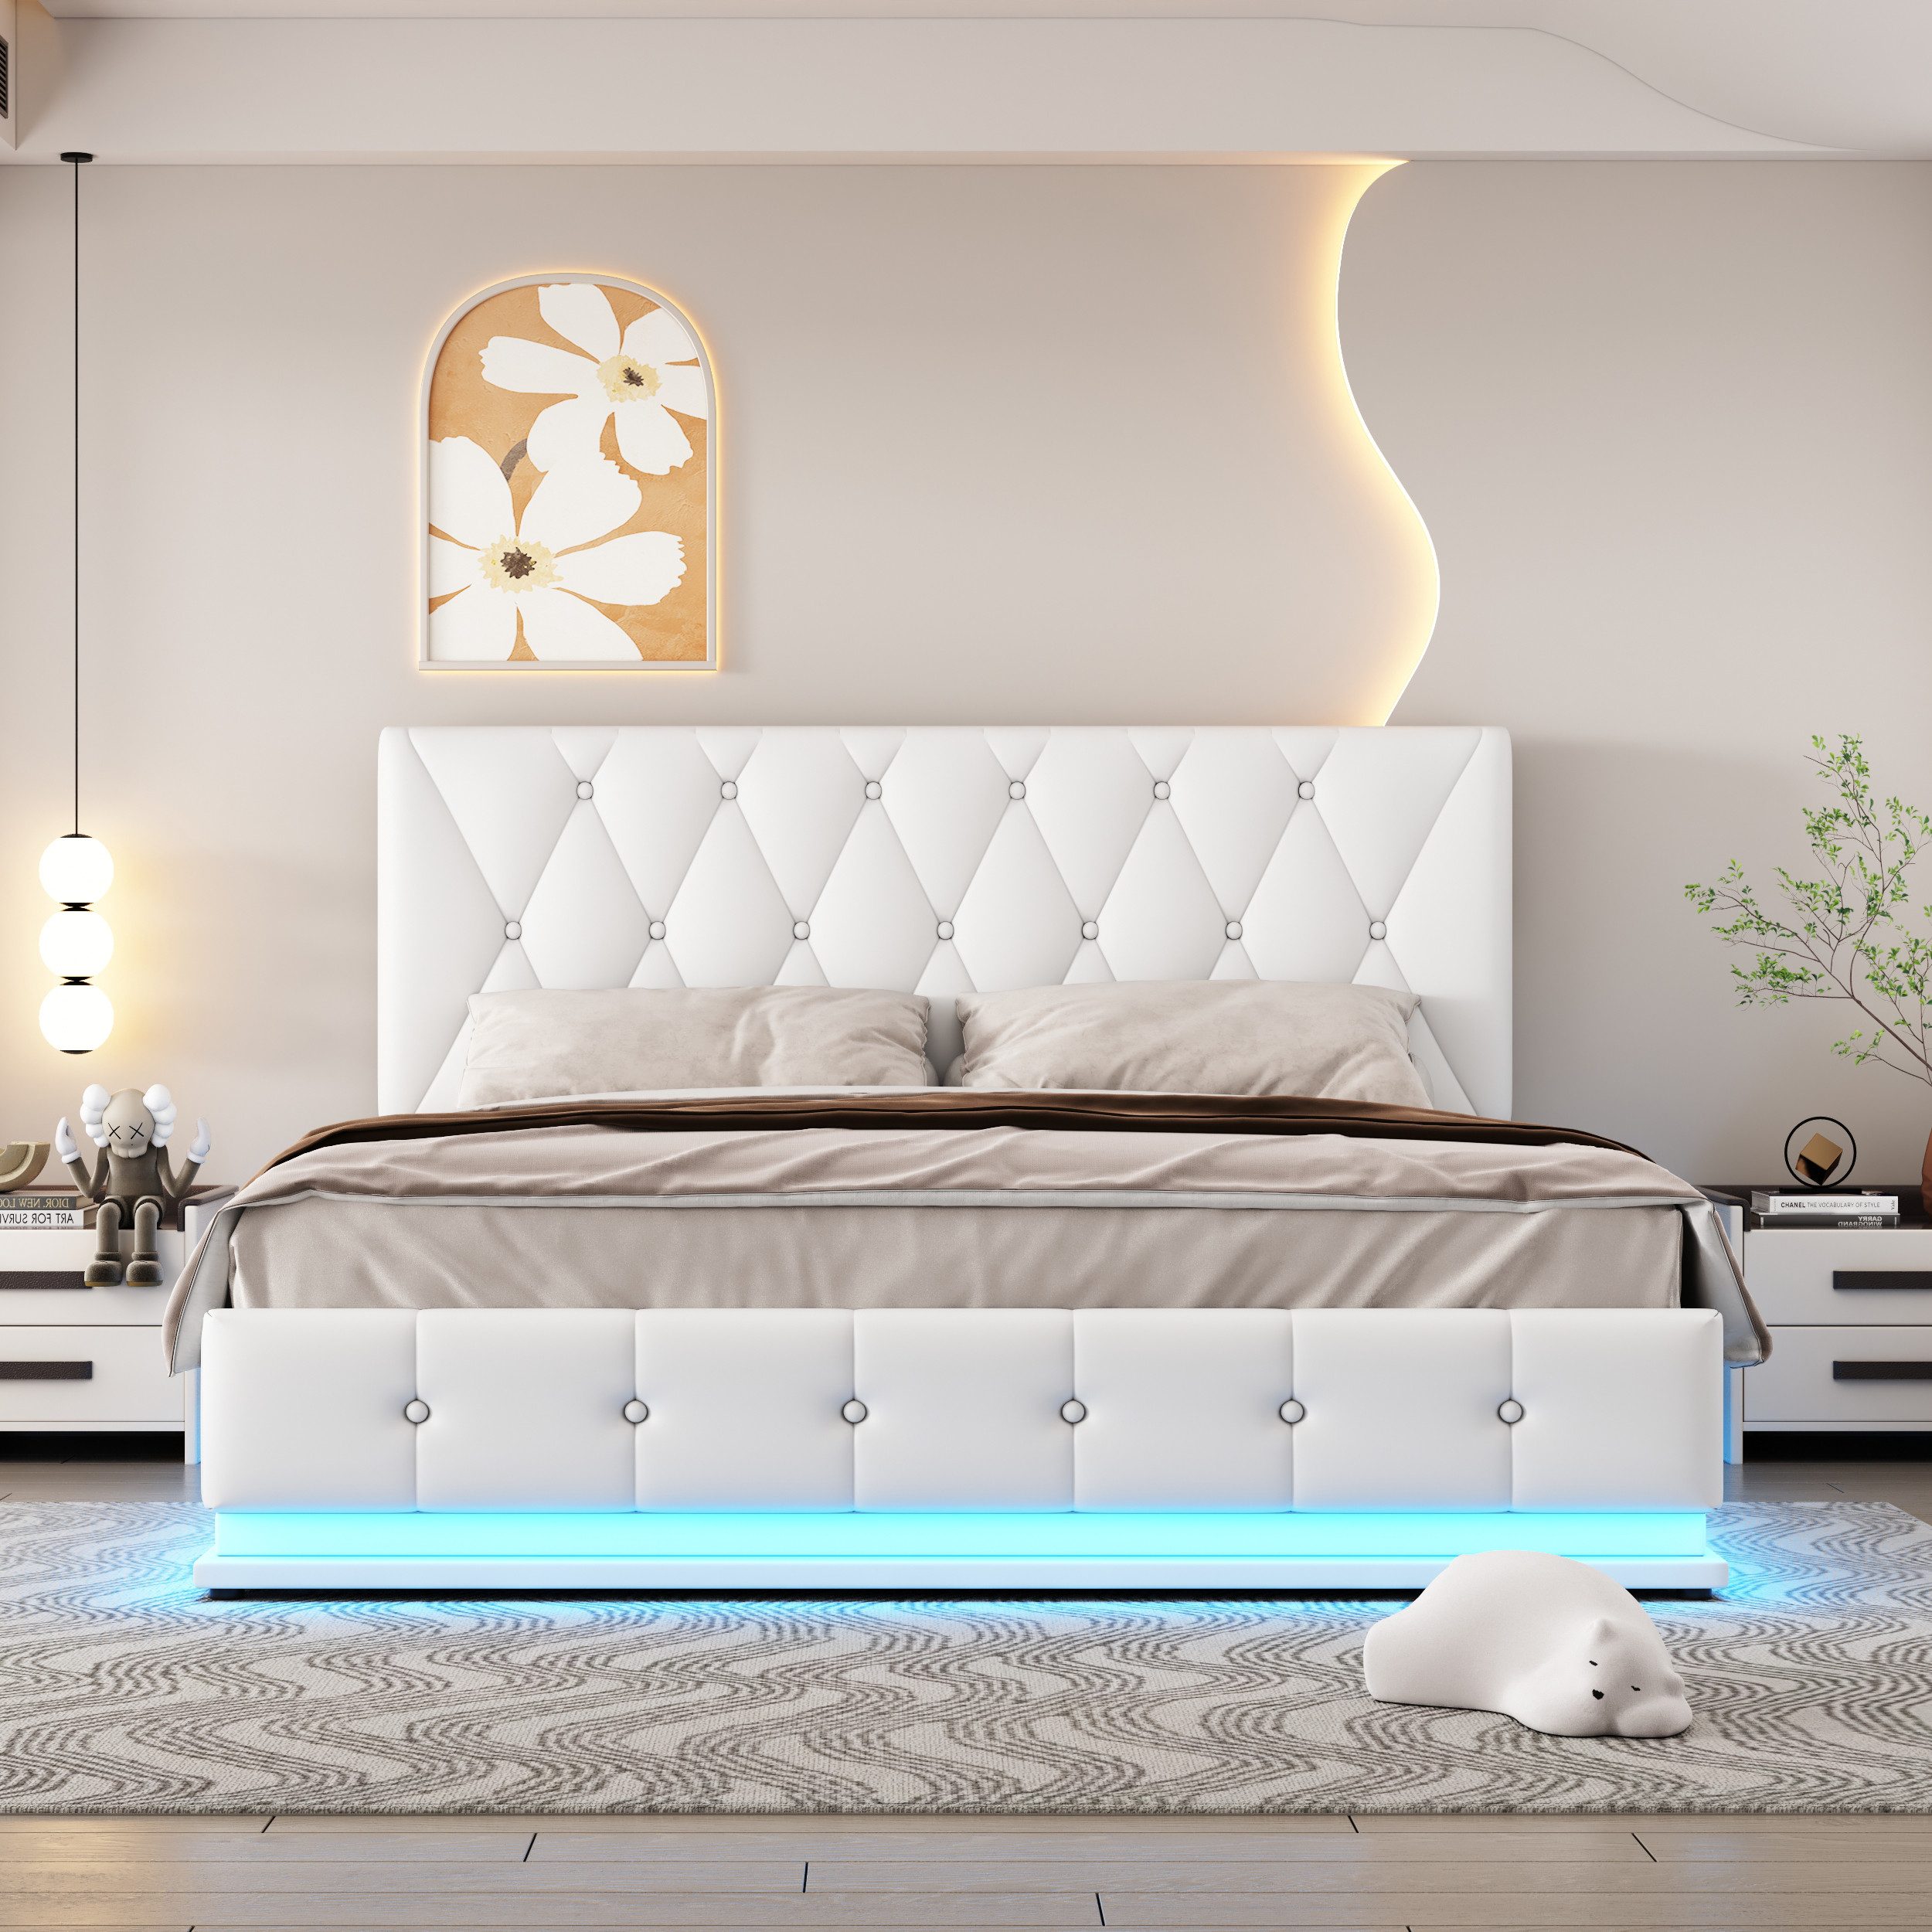 IDEASY Polsterbett Doppelbett, 140x200 cm, mit LED-Beleuchtung, (hydraulisch hebbarer Bettkasten, Kunstleder, hohe Belastbarkeit), höhenverstellbares Kopfteil